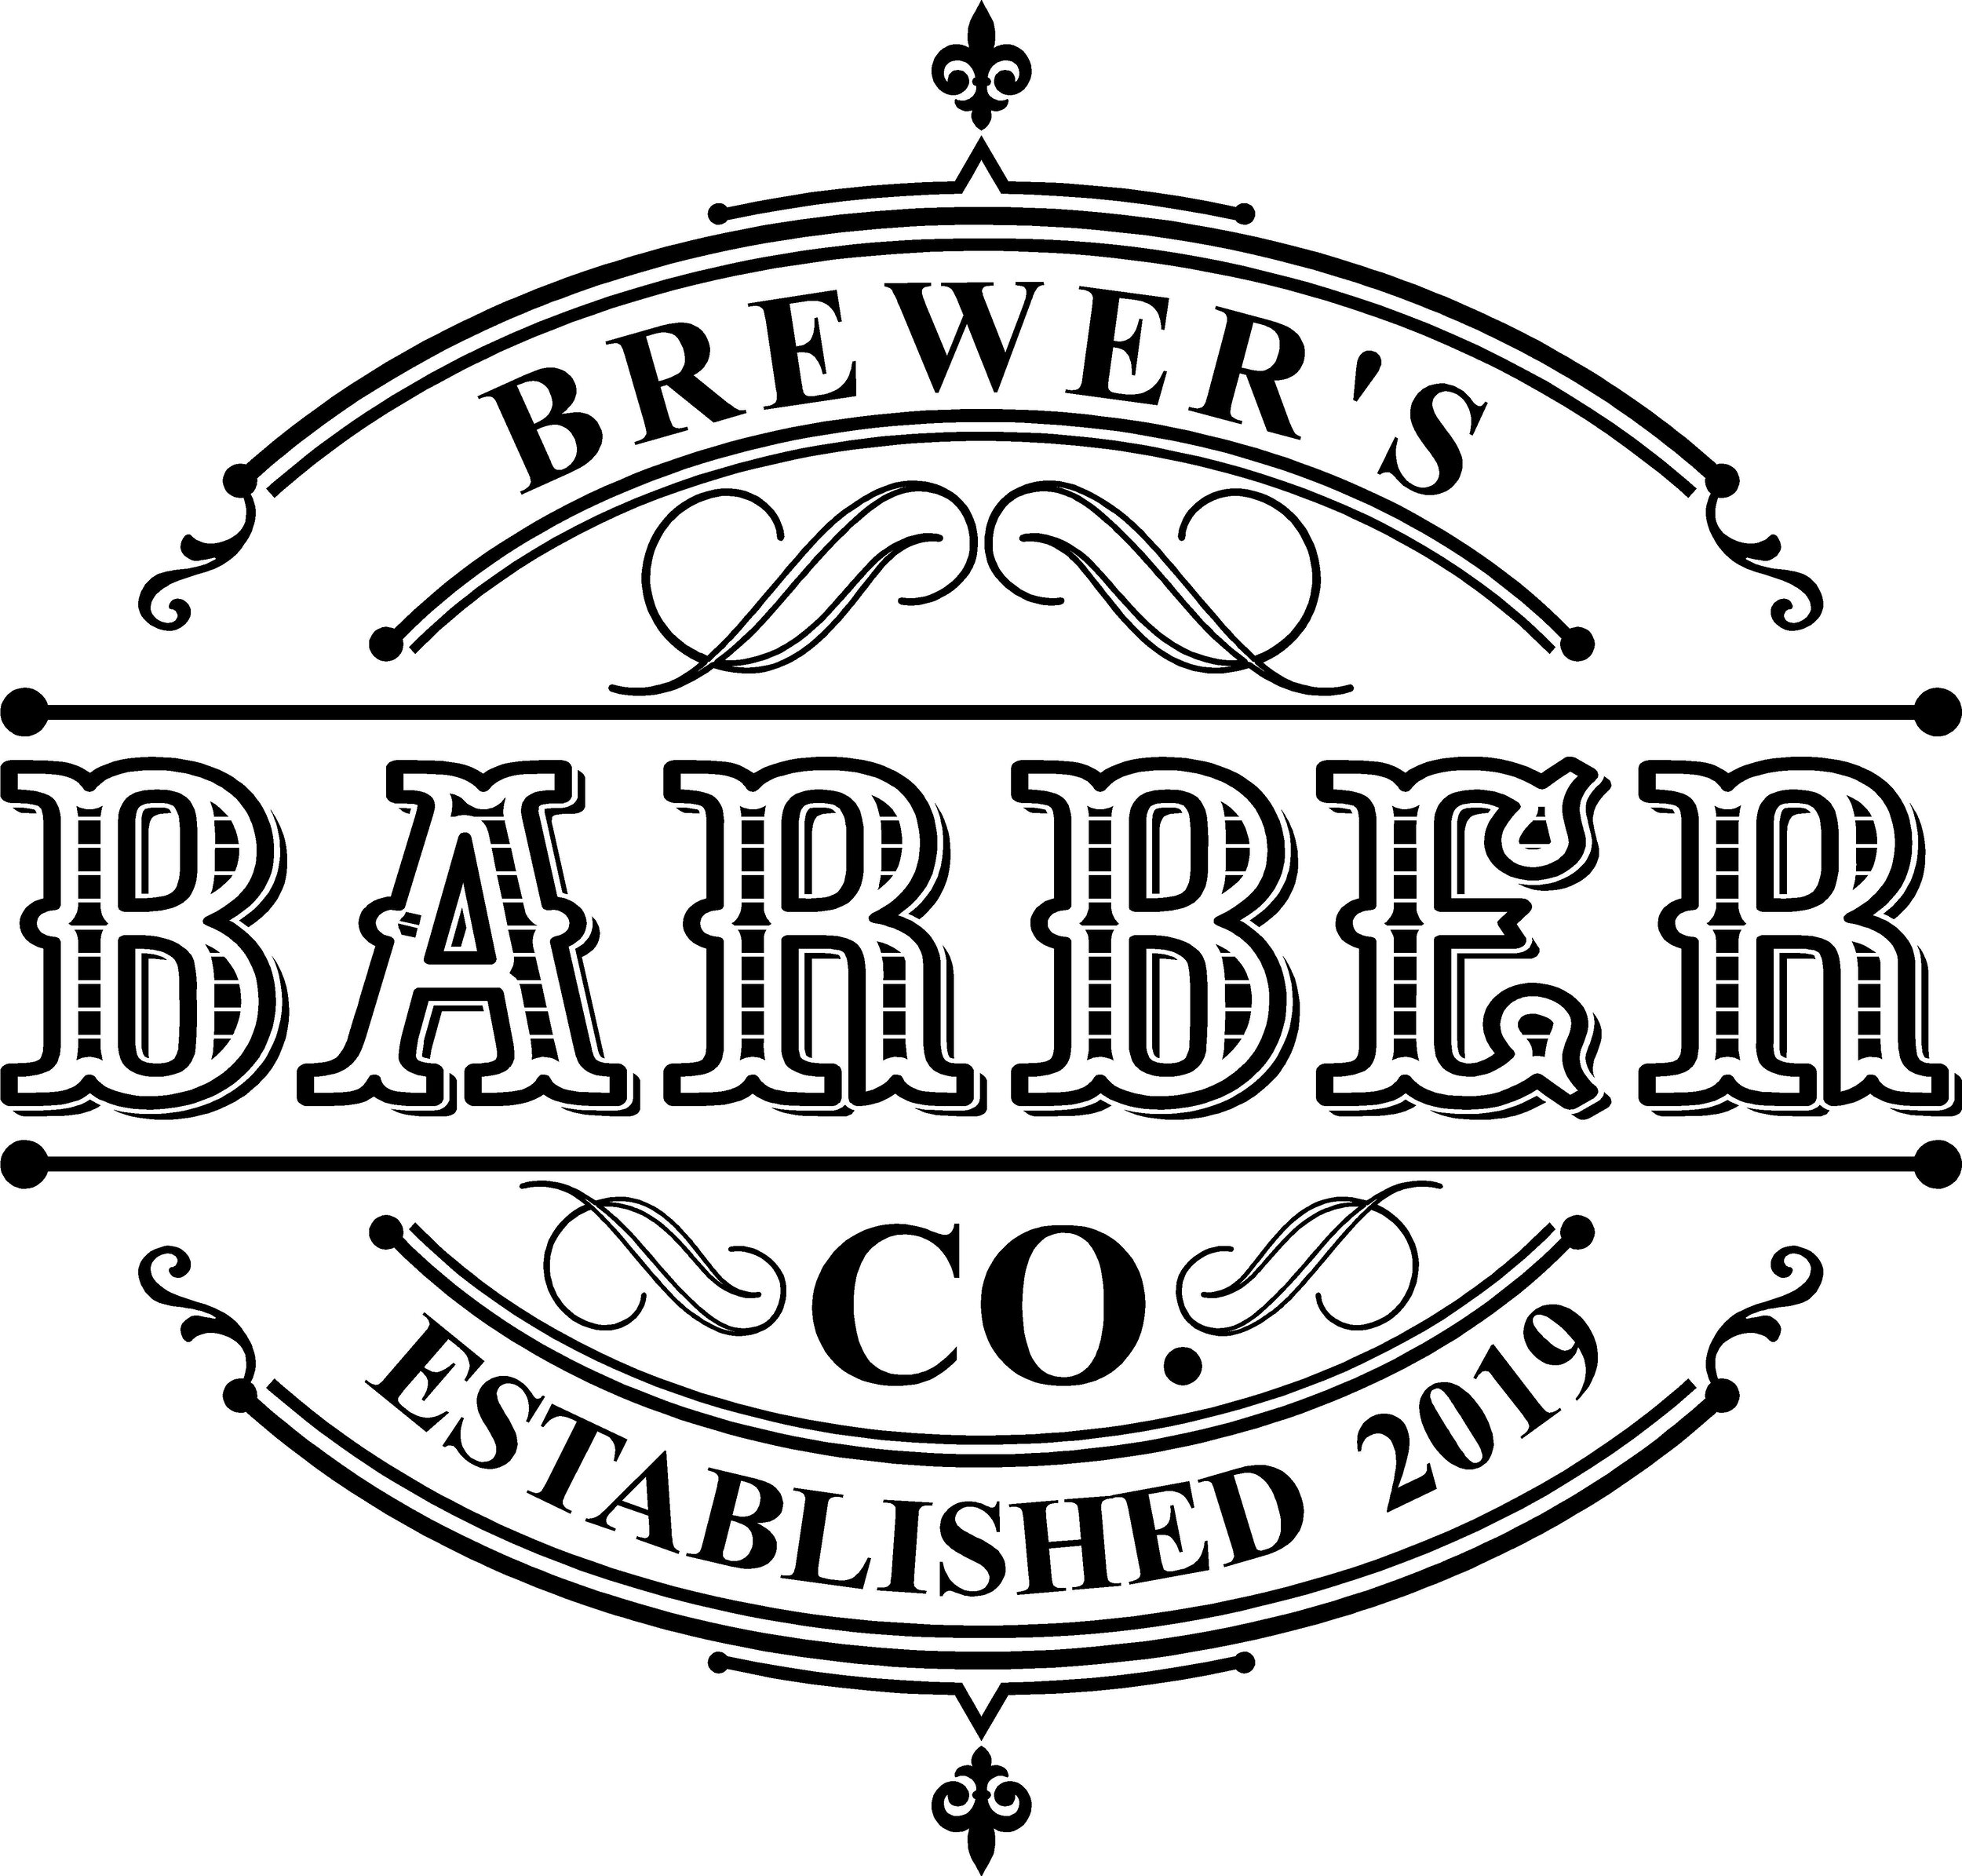 brewersbarberco.com